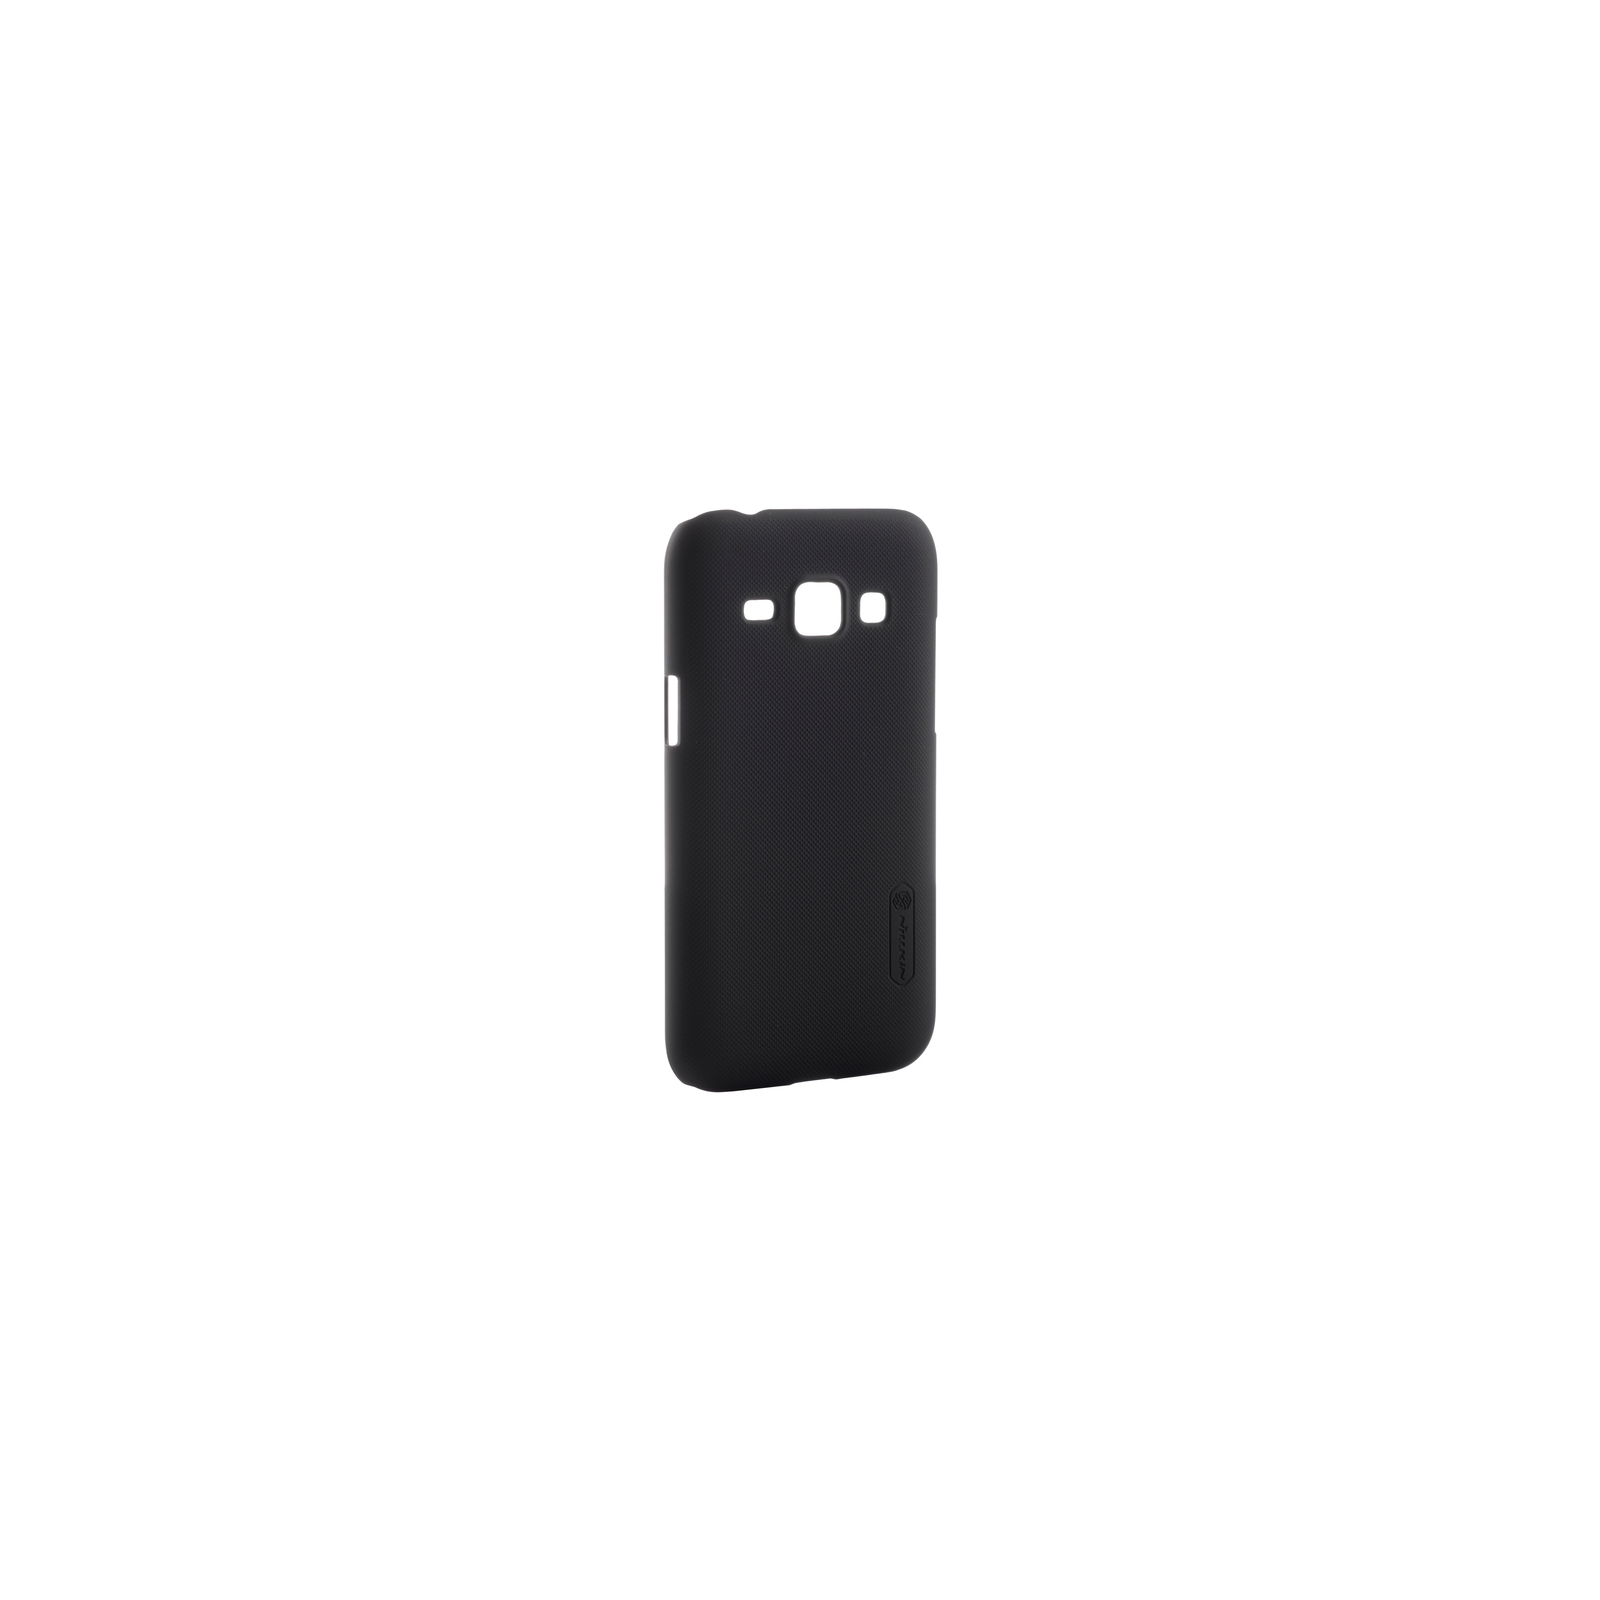 Чехол для мобильного телефона Nillkin для Samsung J1/J100 - Super Frosted Shield (черный) (6218469)